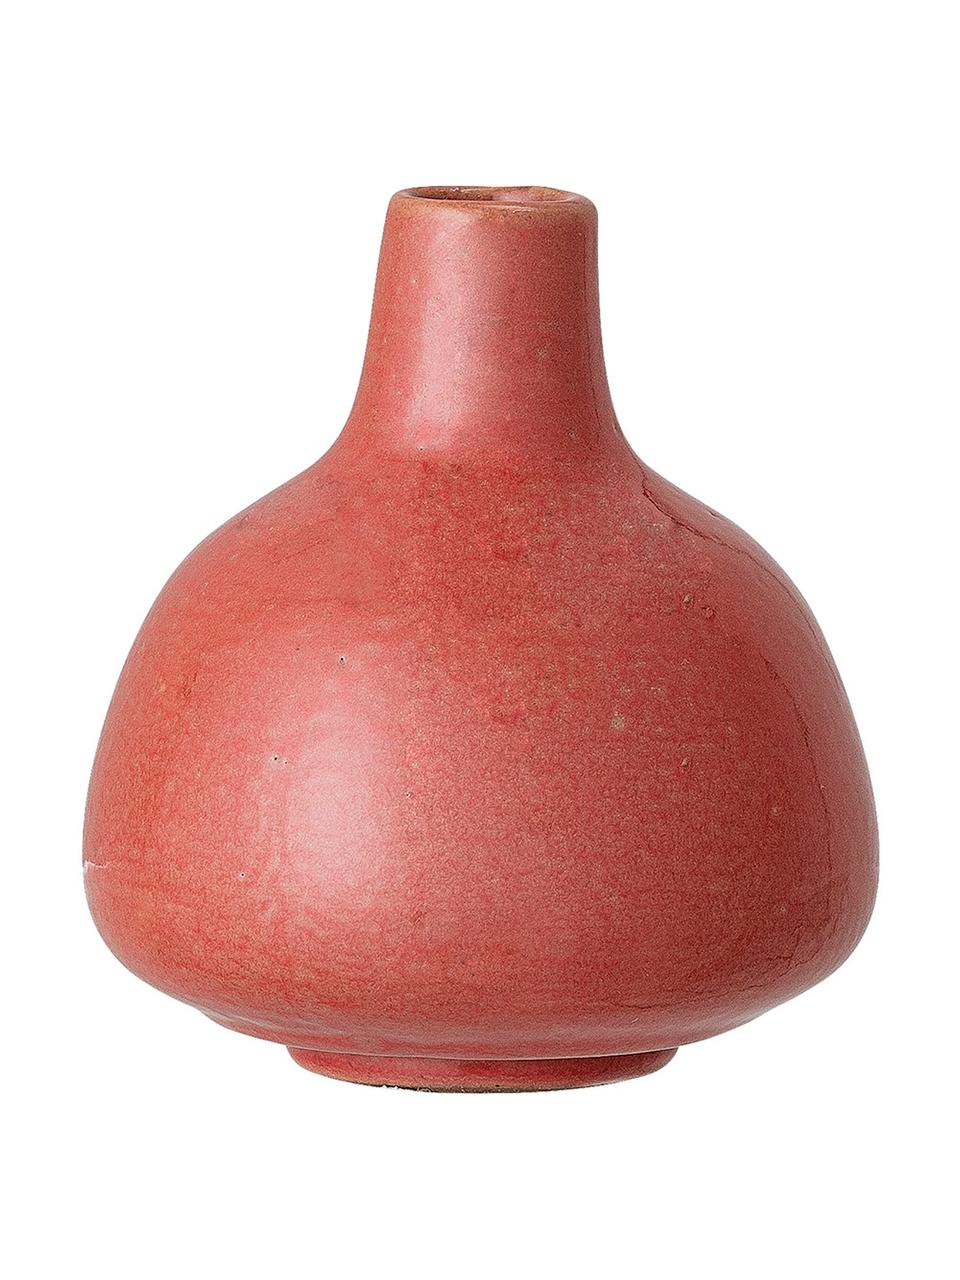 Sada malých váz z kameniny Malina, 2 díly, Červená